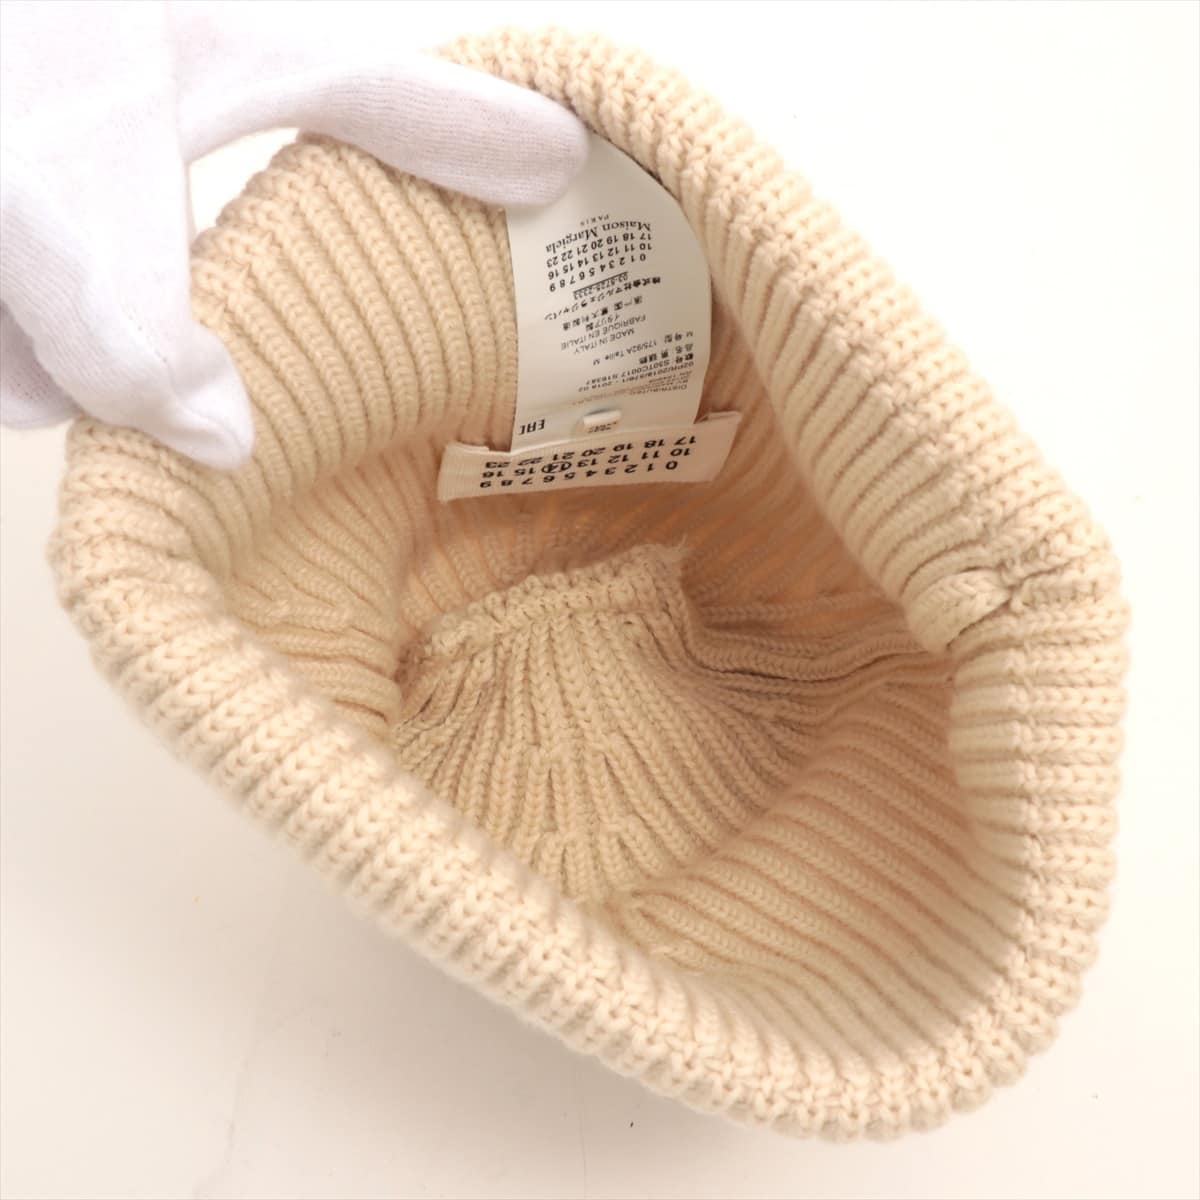 Maison Margiela 4 stitches Knit cap Wool Ivory 2018AW